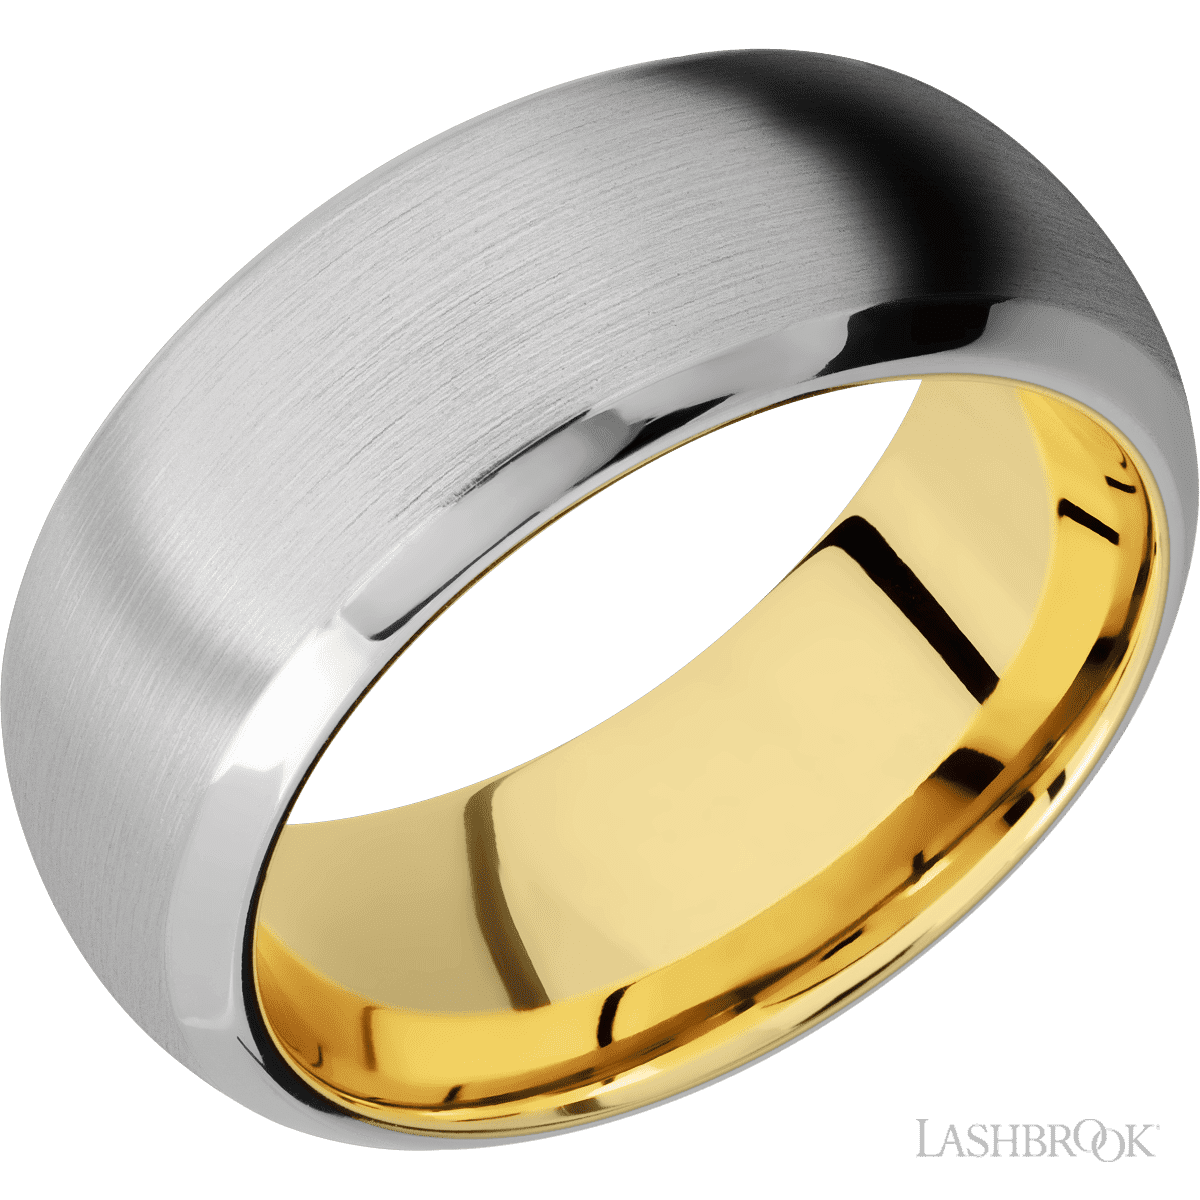 Lashbrook Ring Sizing Kit